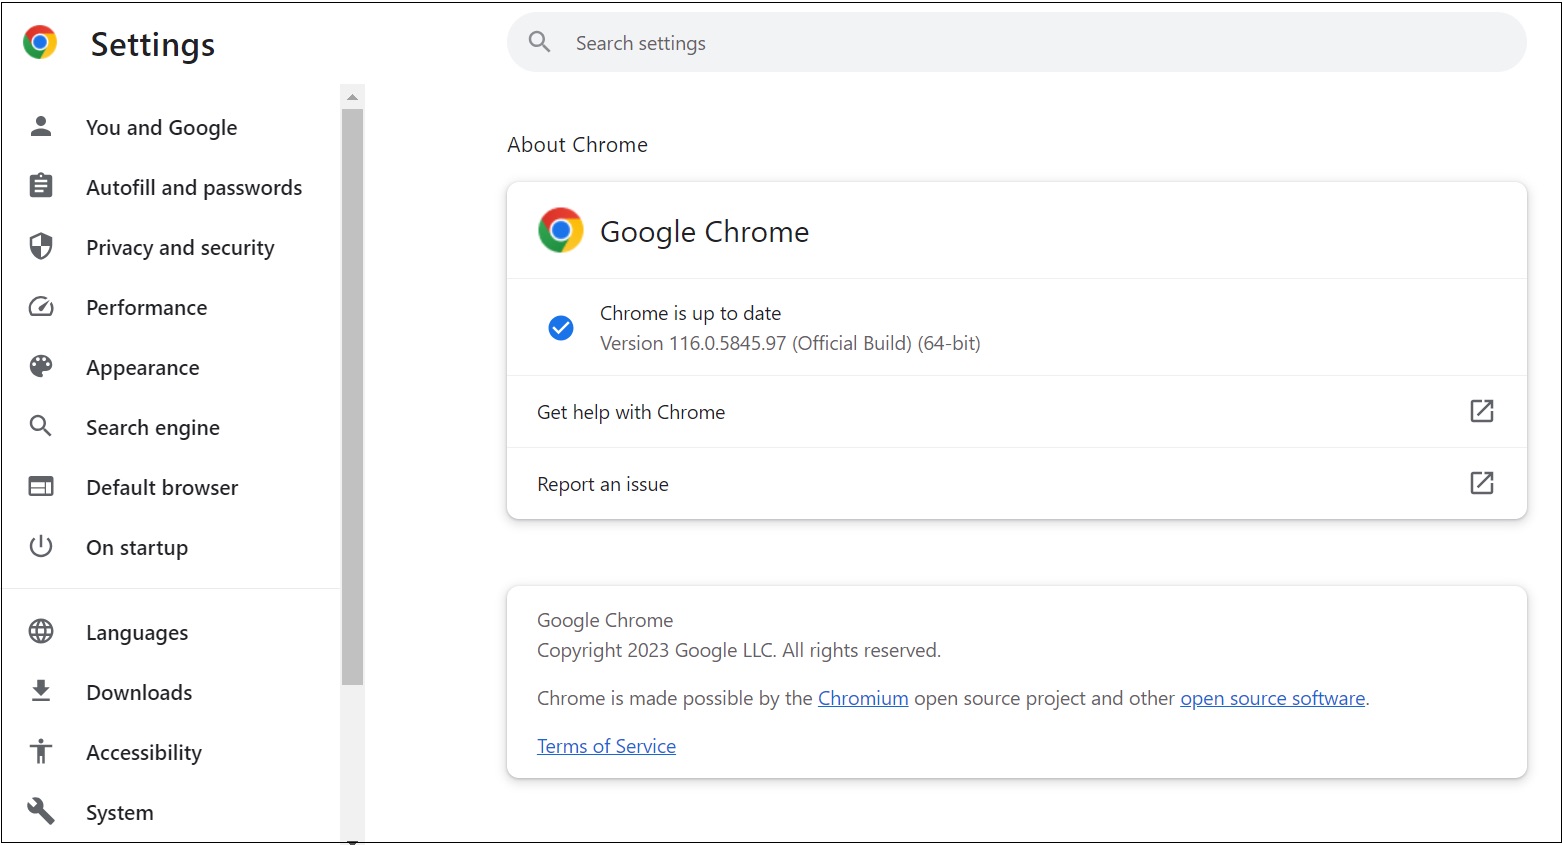 How Do I Speed Up Google Chrome?